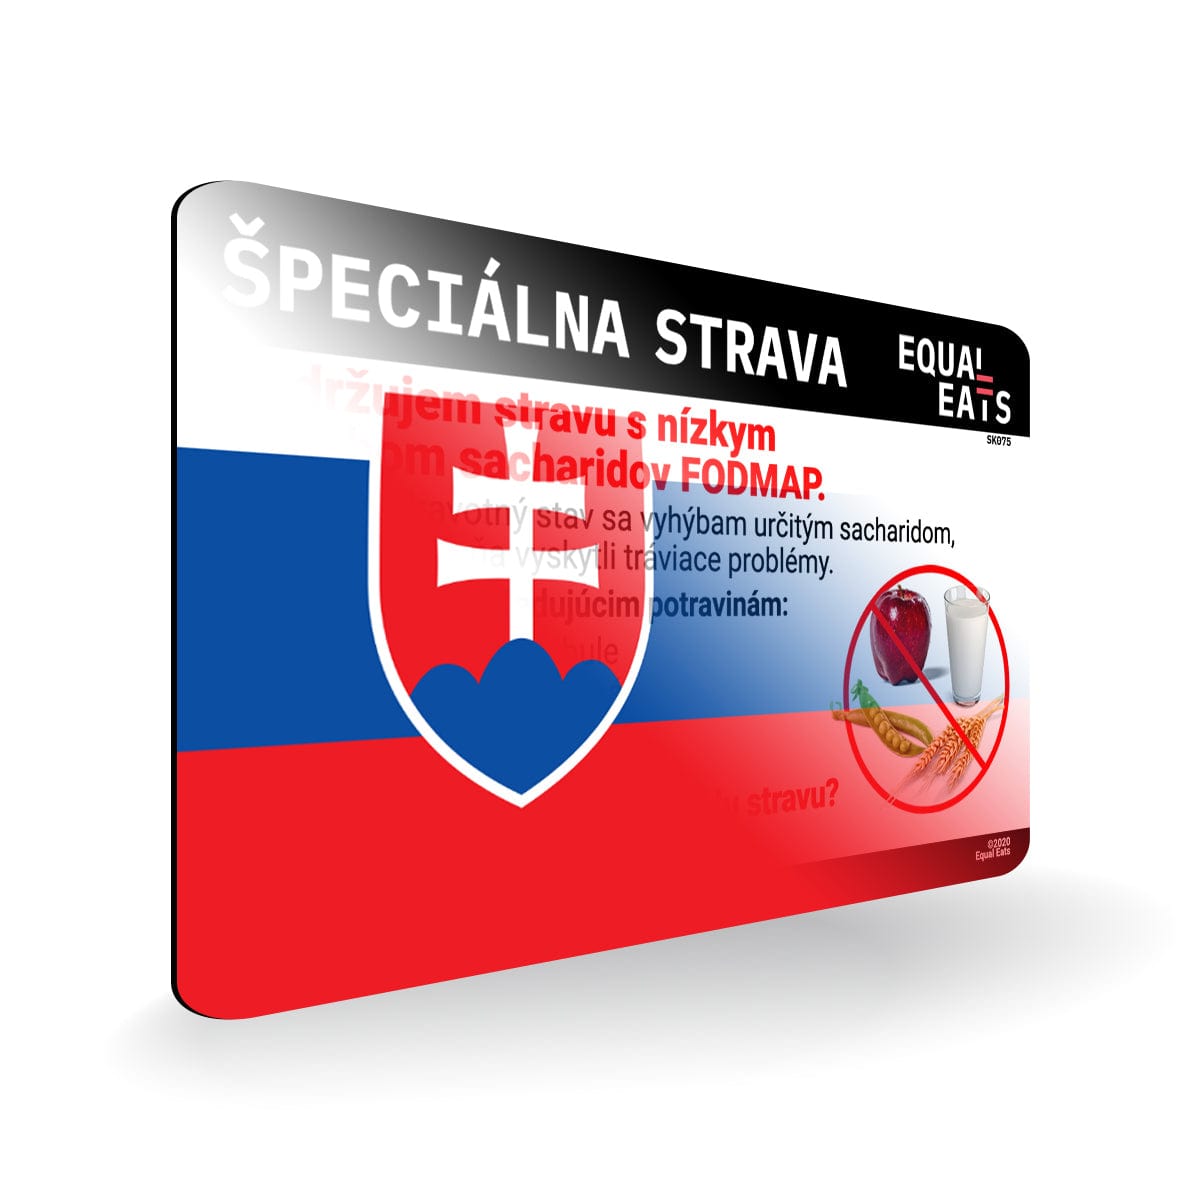 Low FODMAP Diet in Slovak. Low FODMAP Diet Card for Slovakia